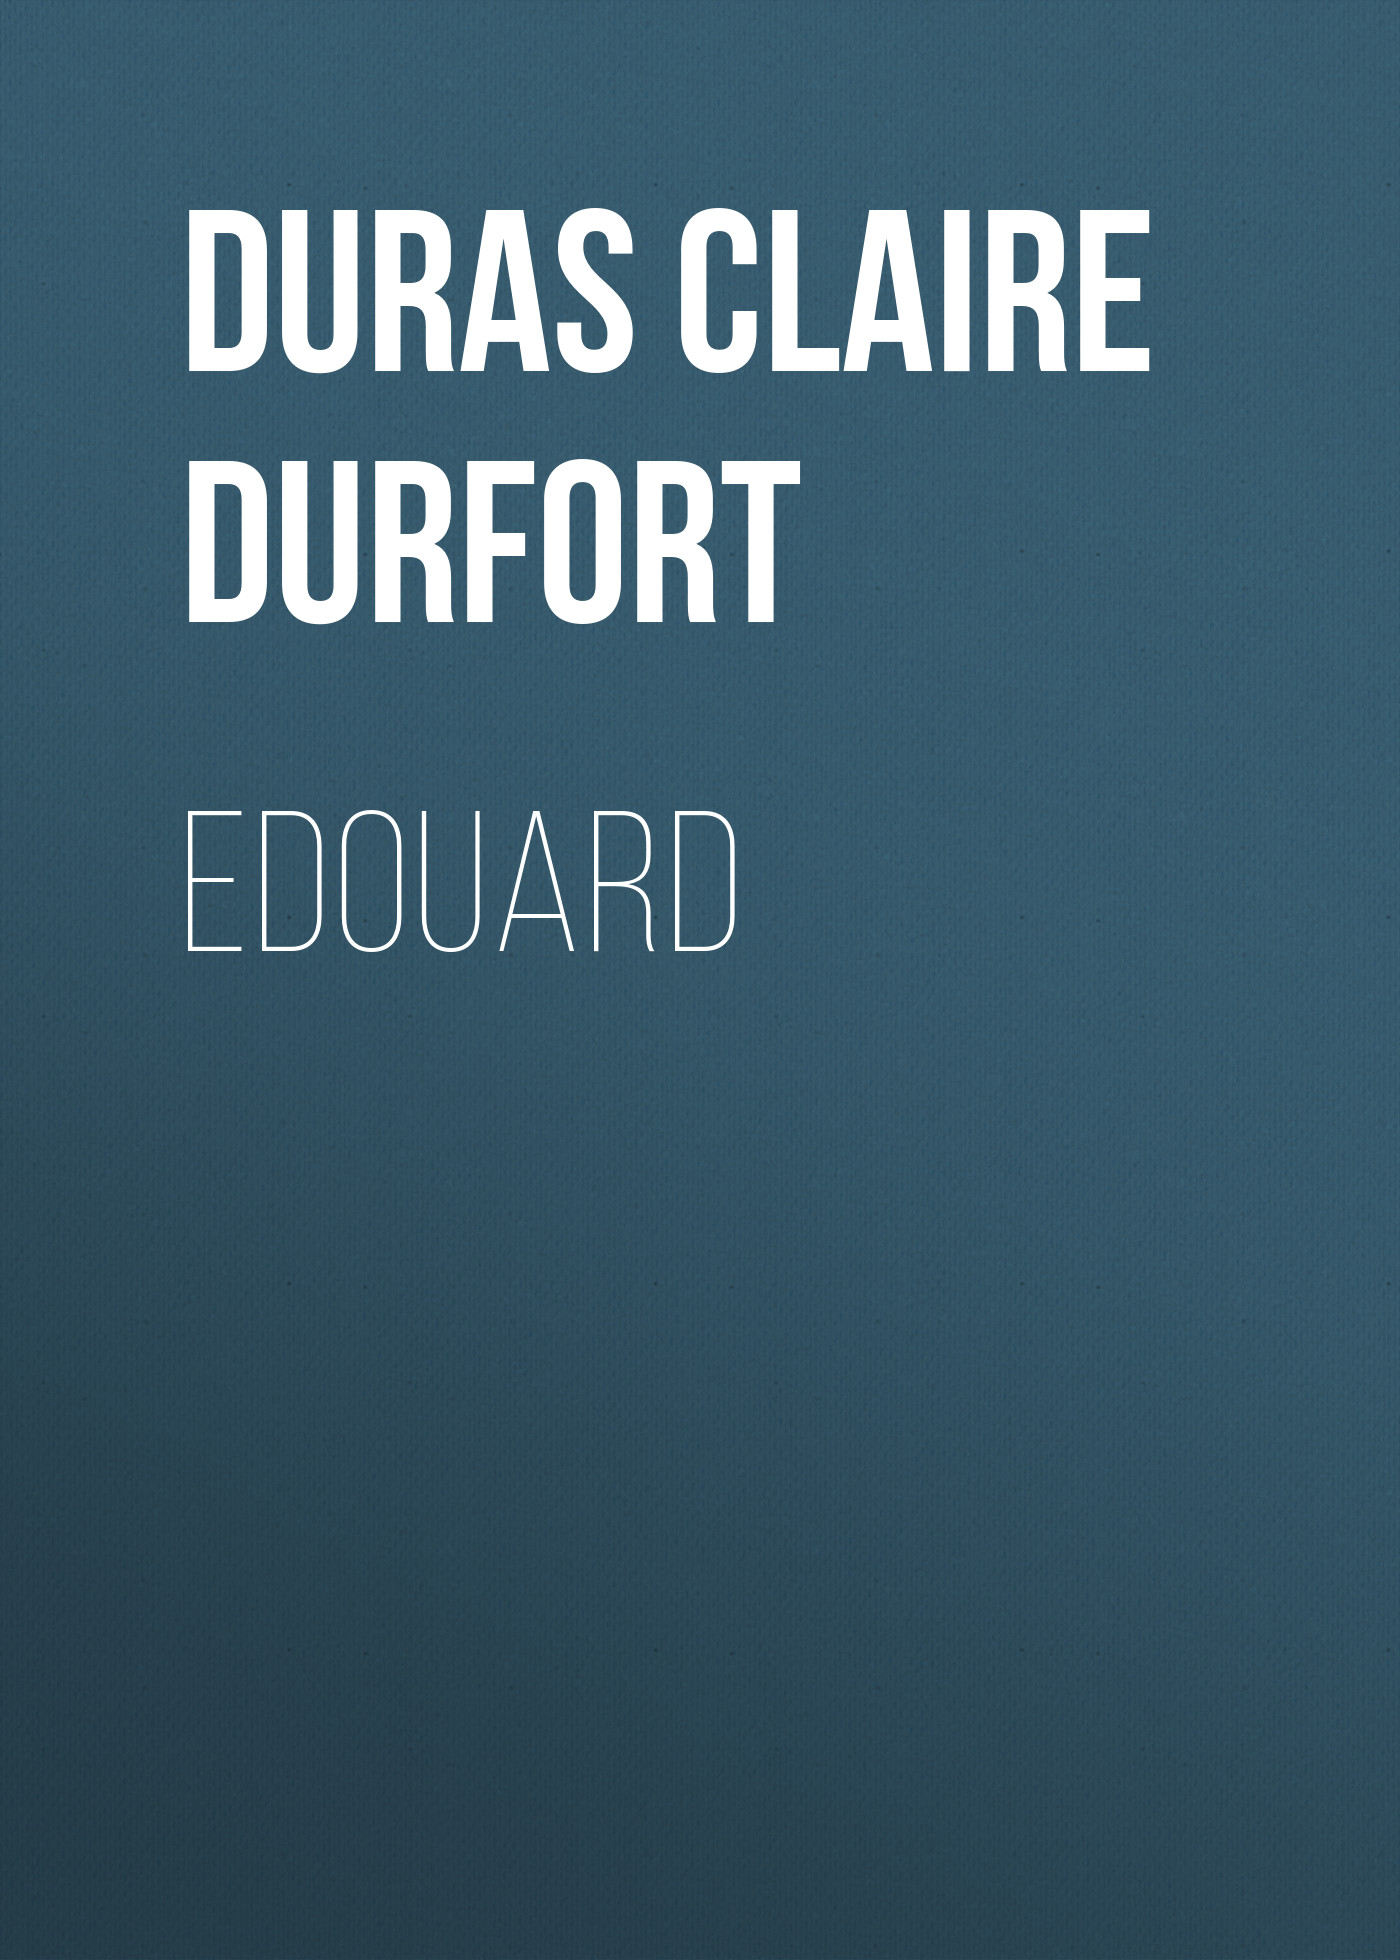 Книга Edouard из серии , созданная Claire Duras, может относится к жанру Зарубежная старинная литература, Зарубежная классика. Стоимость электронной книги Edouard с идентификатором 24620965 составляет 0 руб.